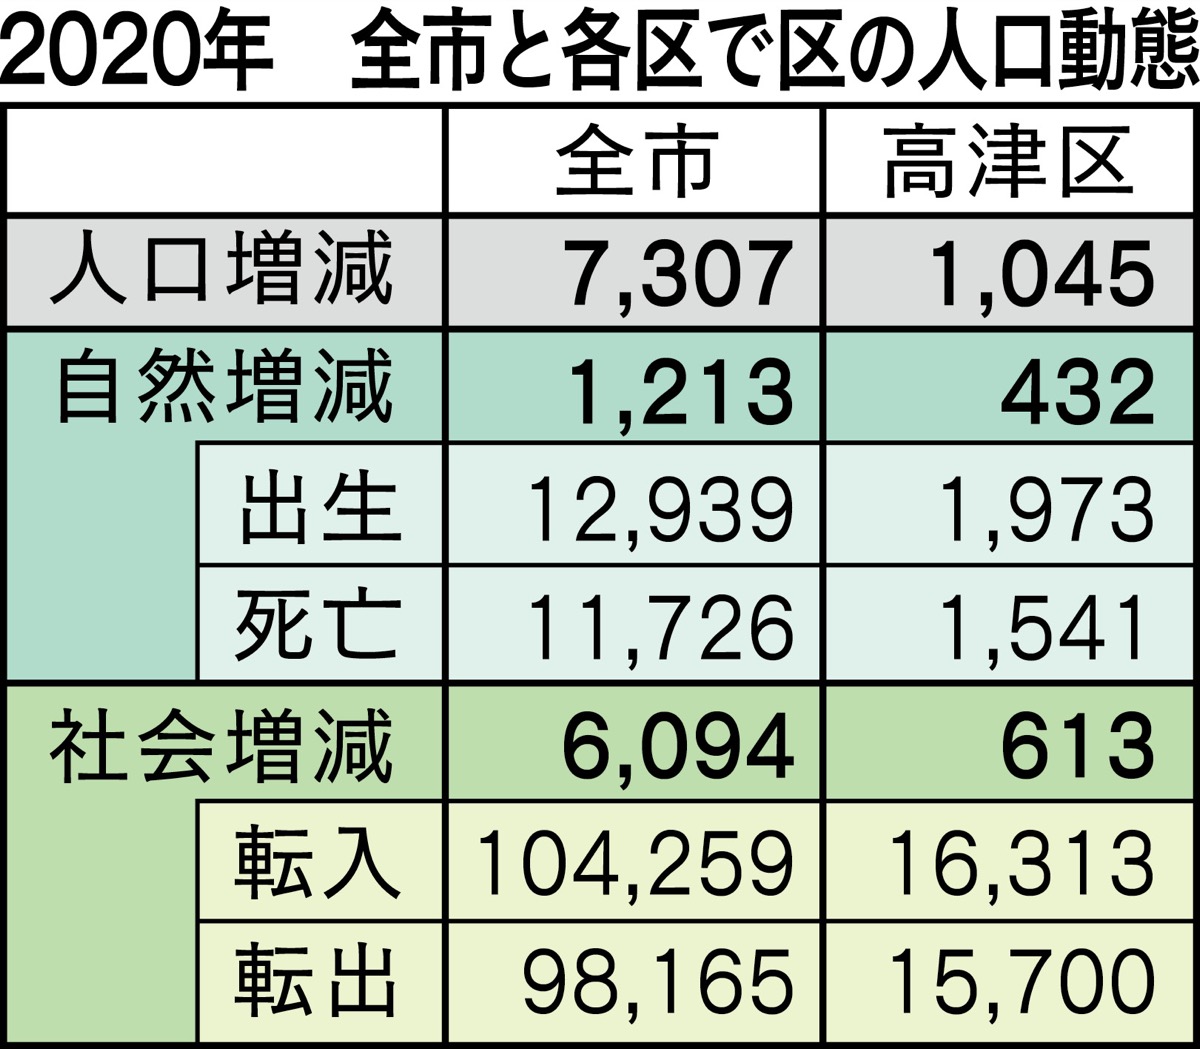 川崎市の人口「転入数の減少」が顕著に